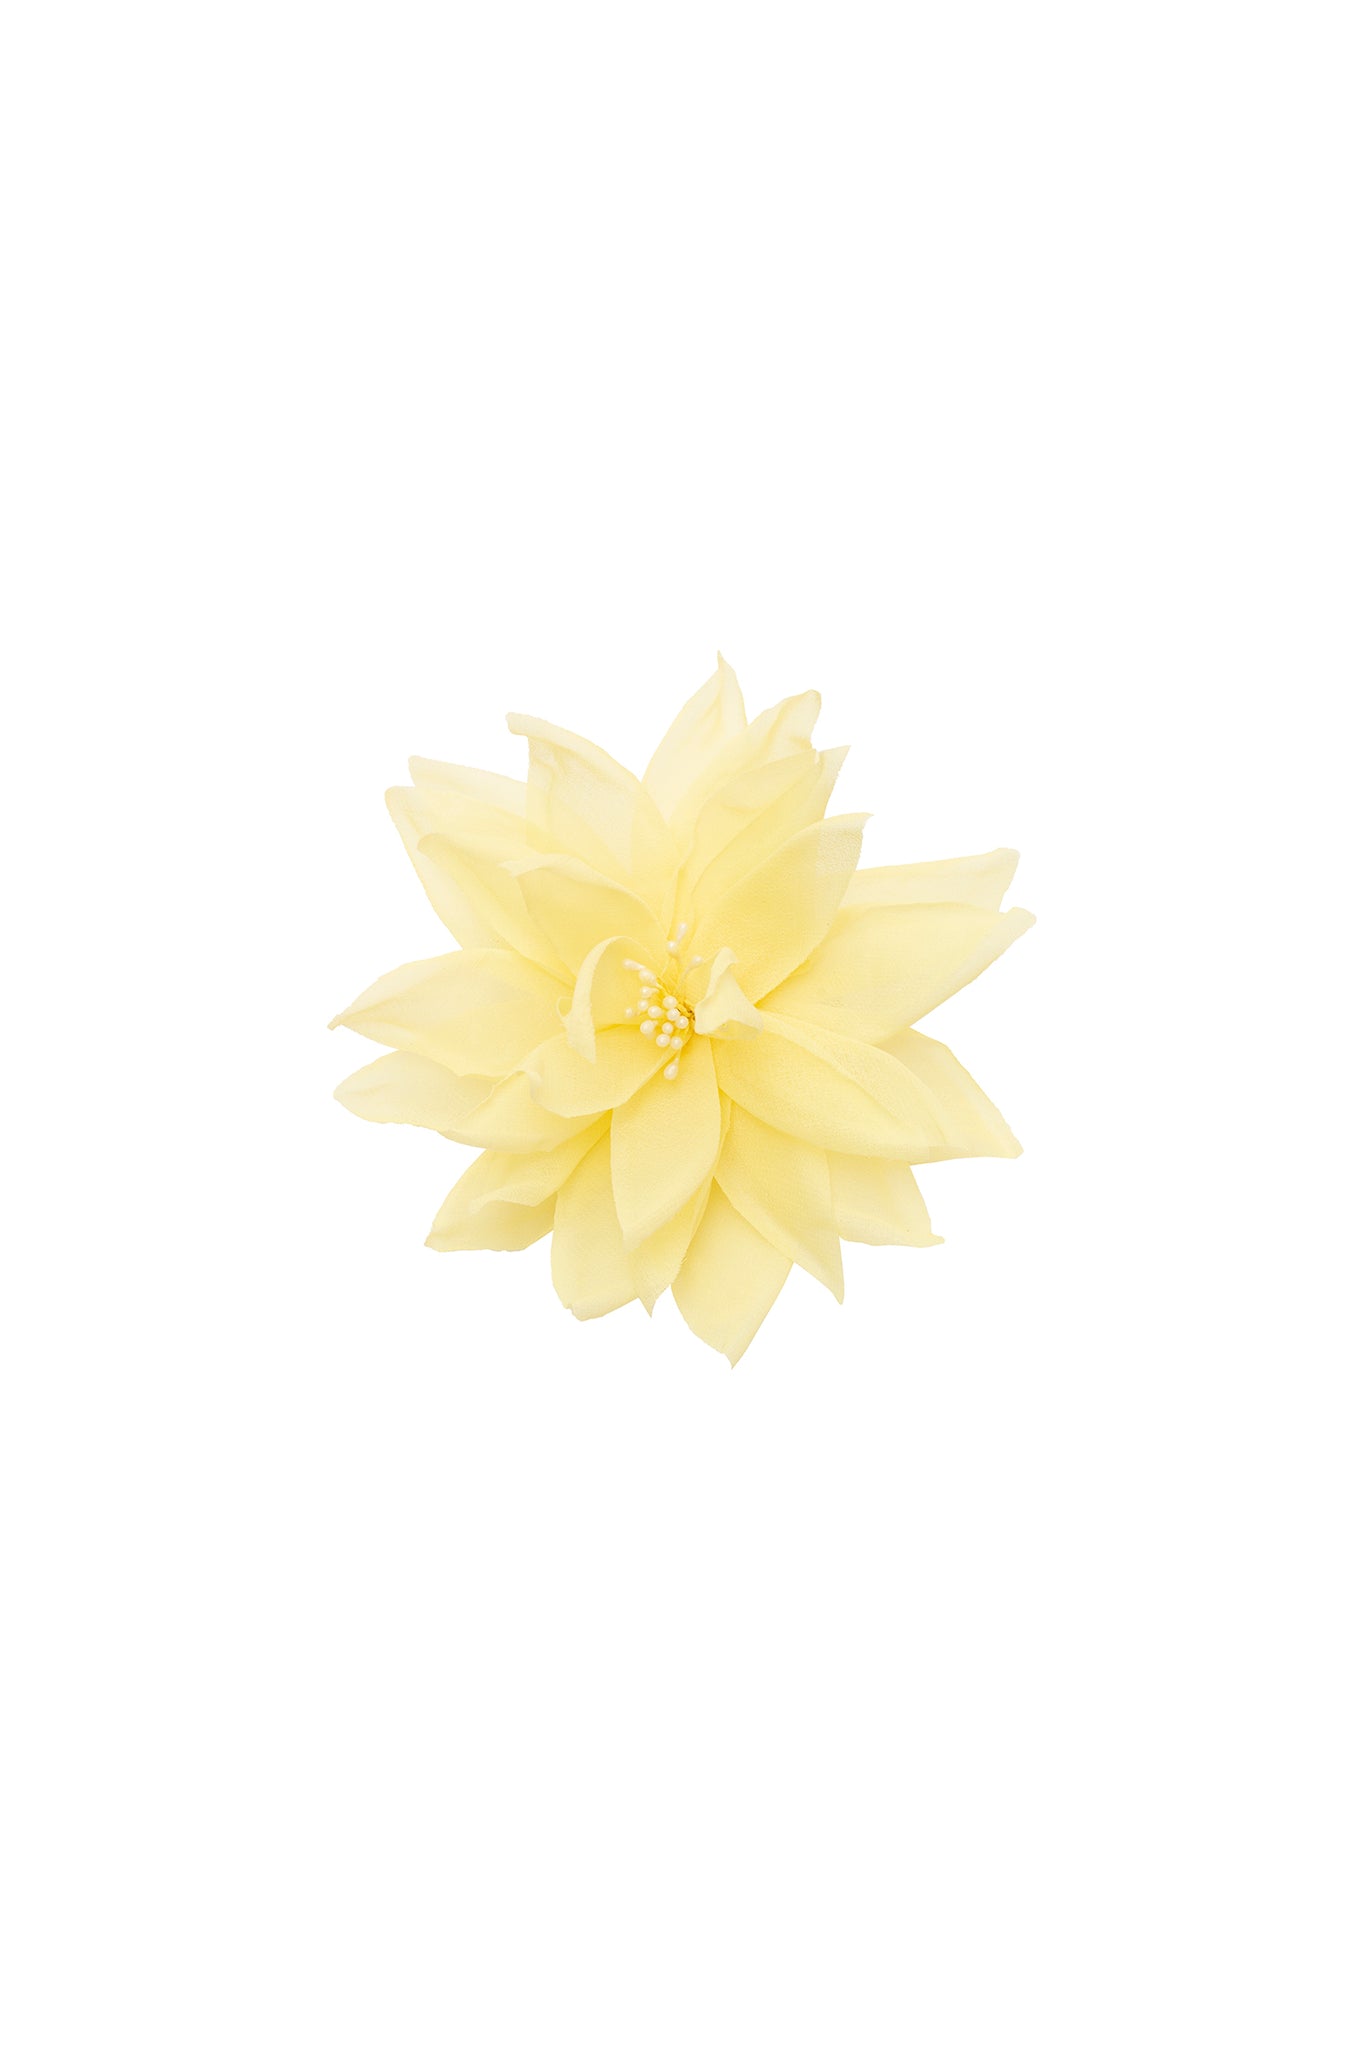 Flor de lotus amarela